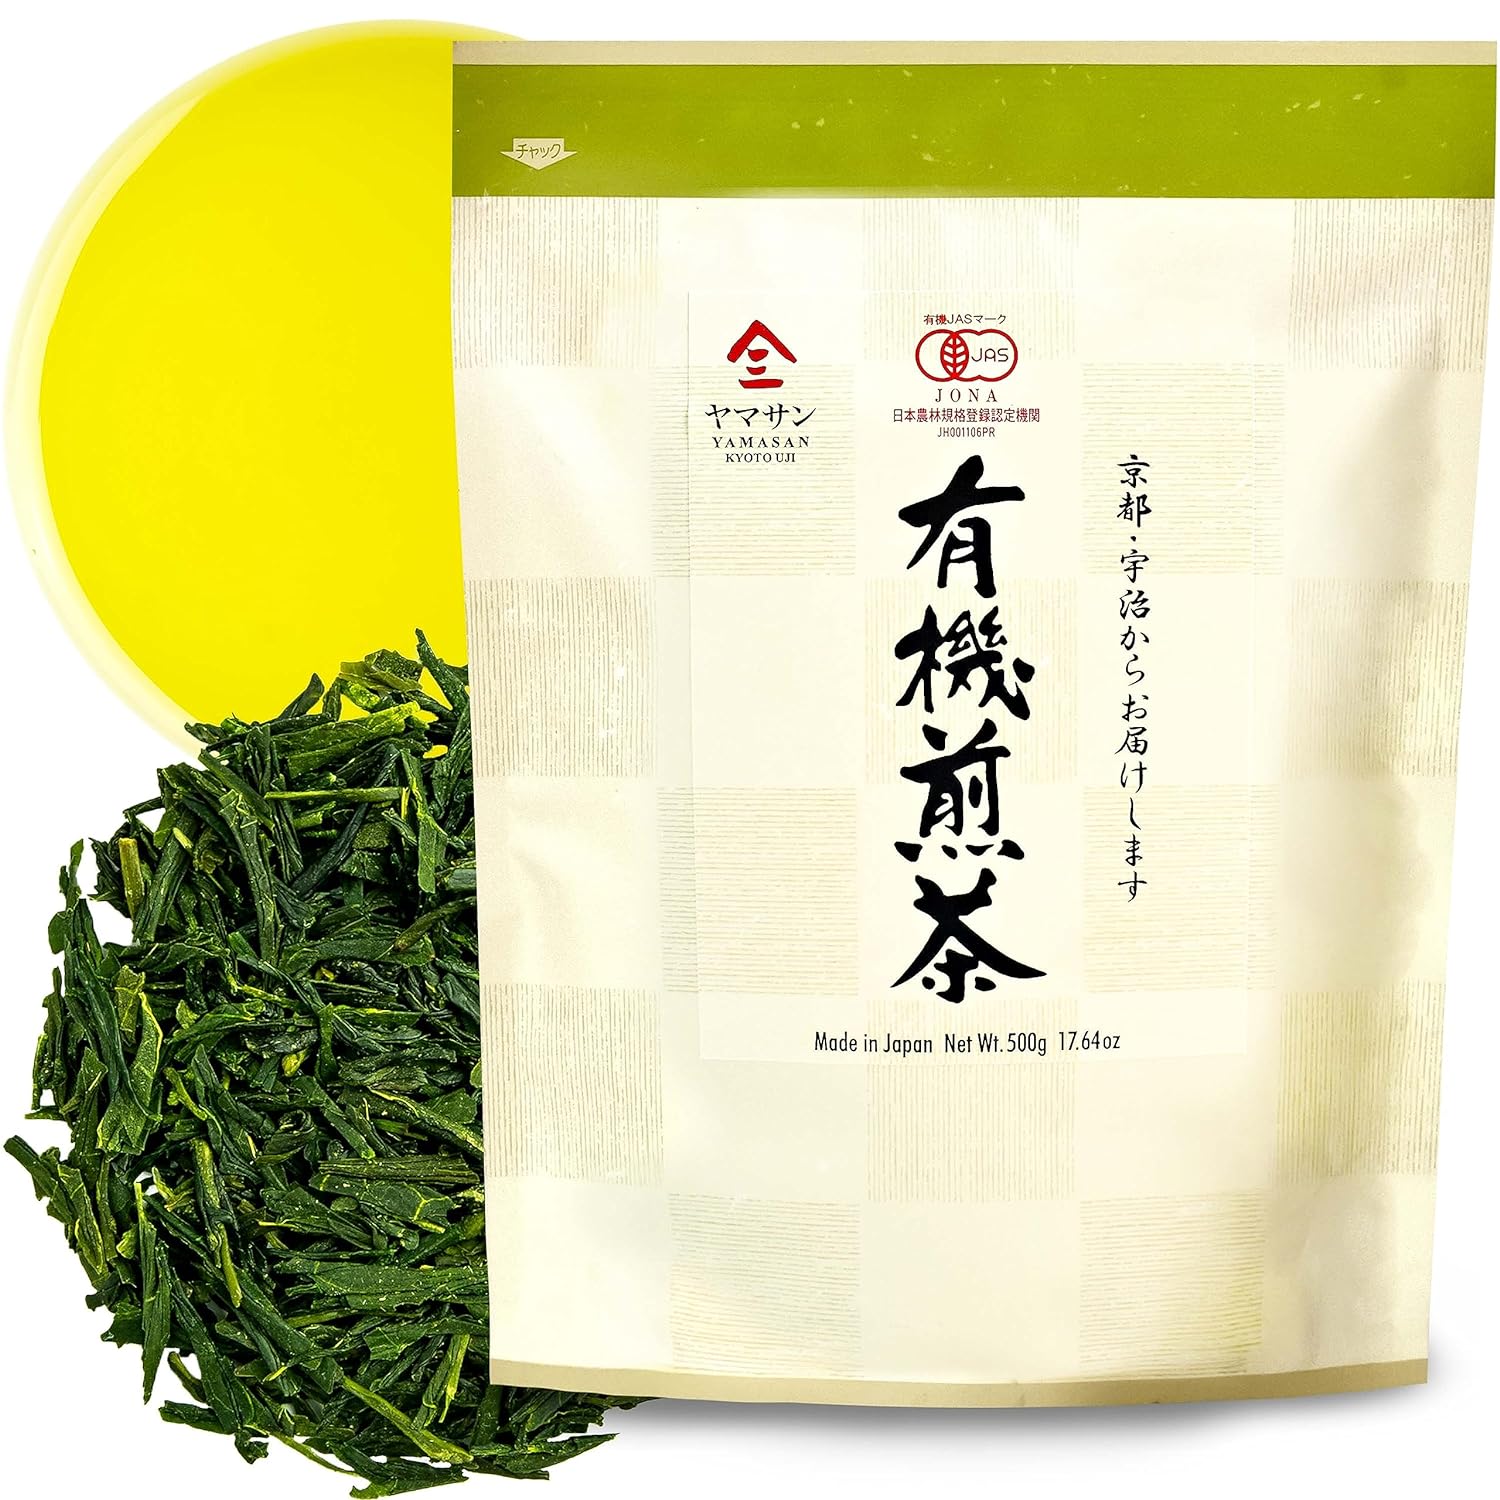 Organic Sencha Green Tea Loose Leaves 300g Bag